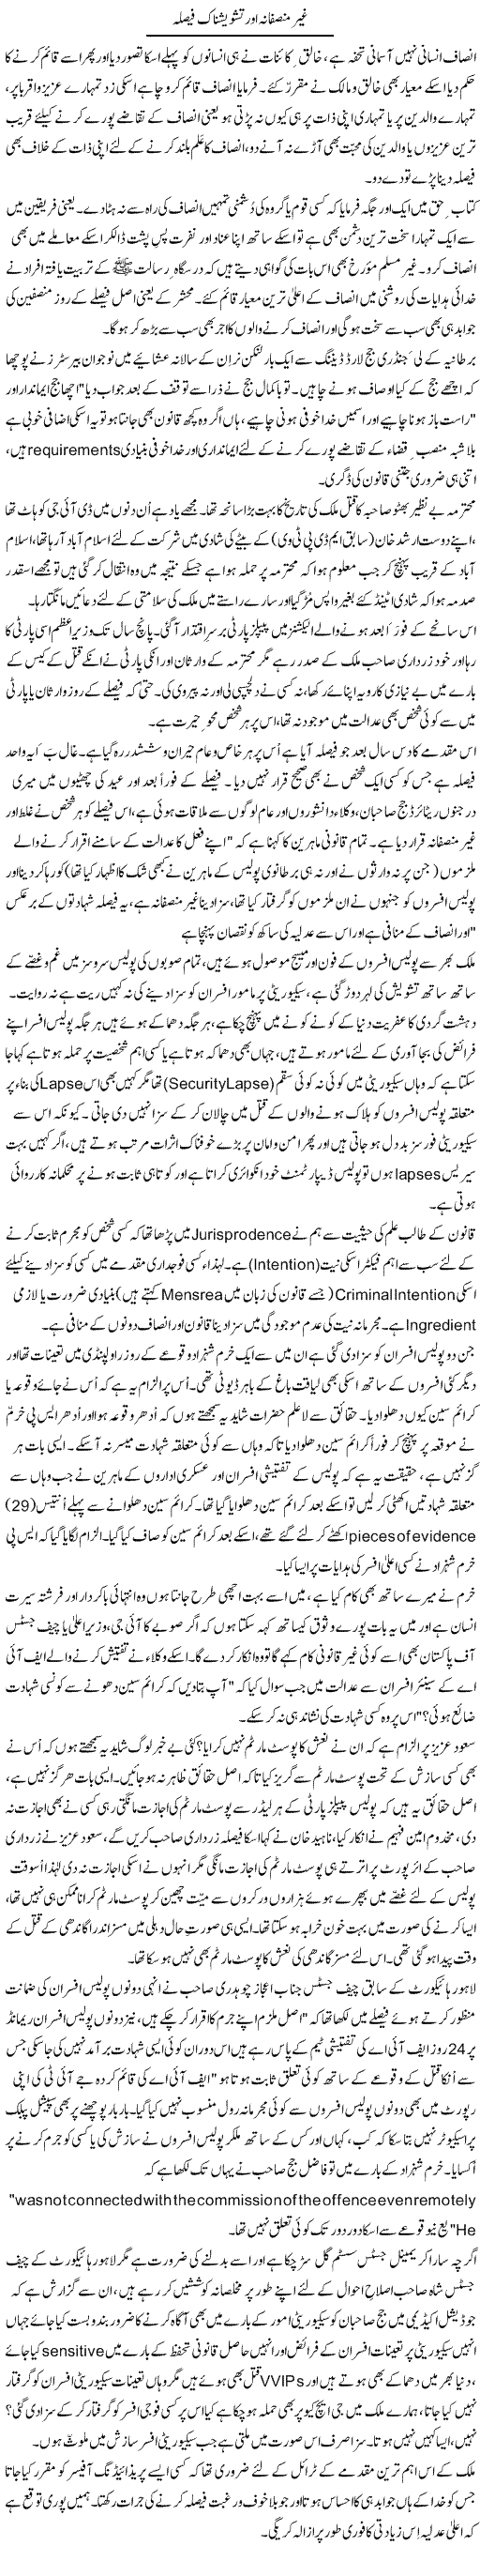 Ghair Munsifana Aur Tashweesh-Naak Faisla | Zulfiqar Ahmed Cheema | Daily Urdu Columns